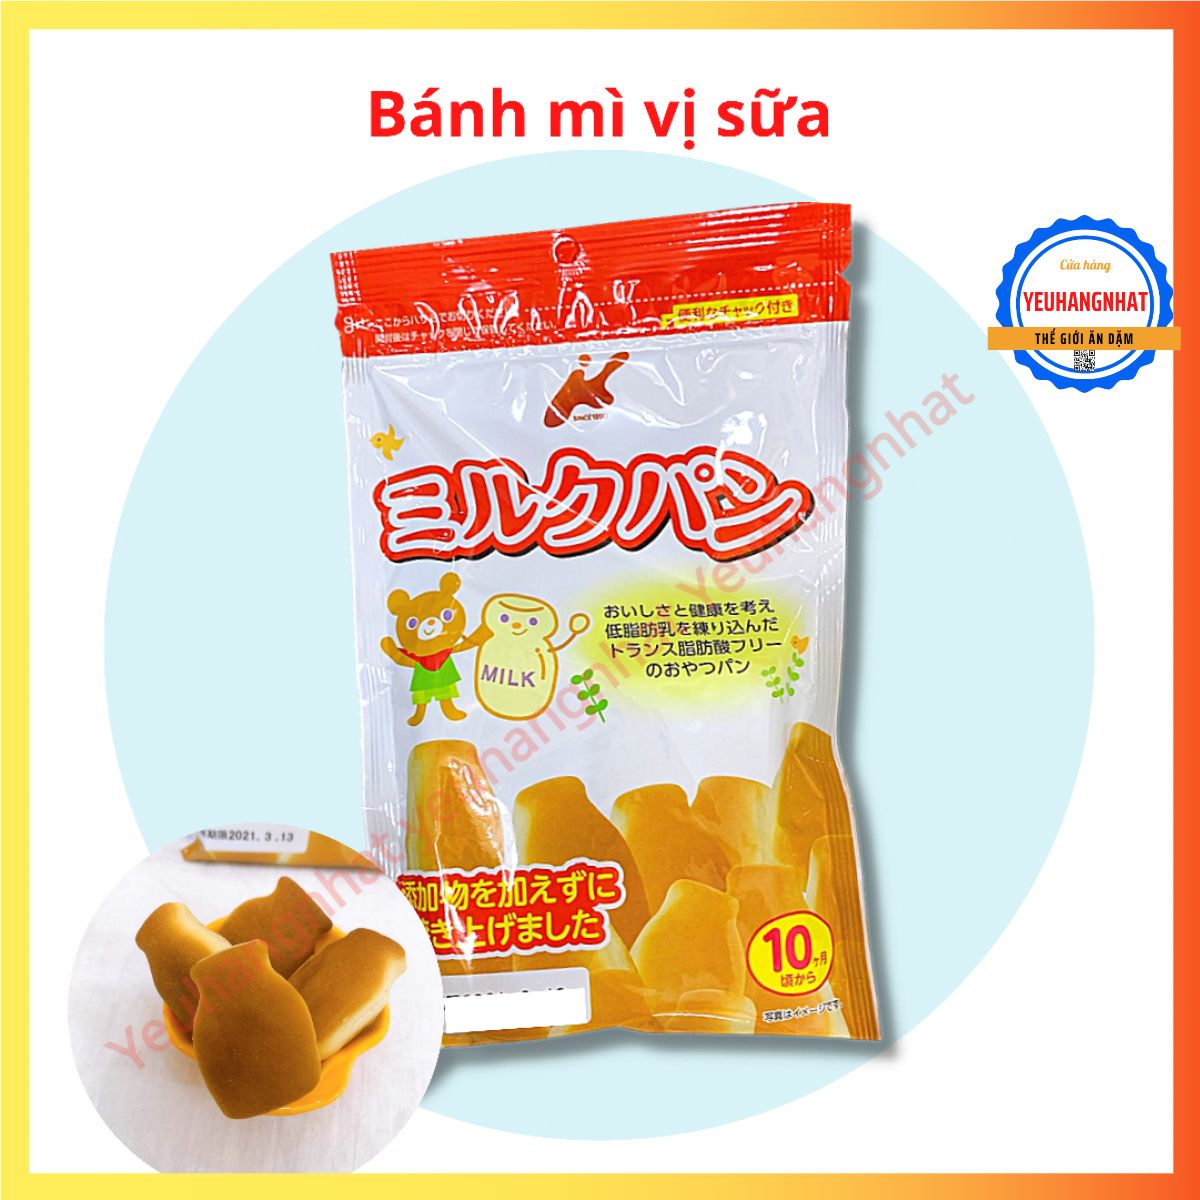 Bánh Mì Tươi Vị Sữa Canet Cho Bé 45g Nhật Bản cho bé từ 10 tháng